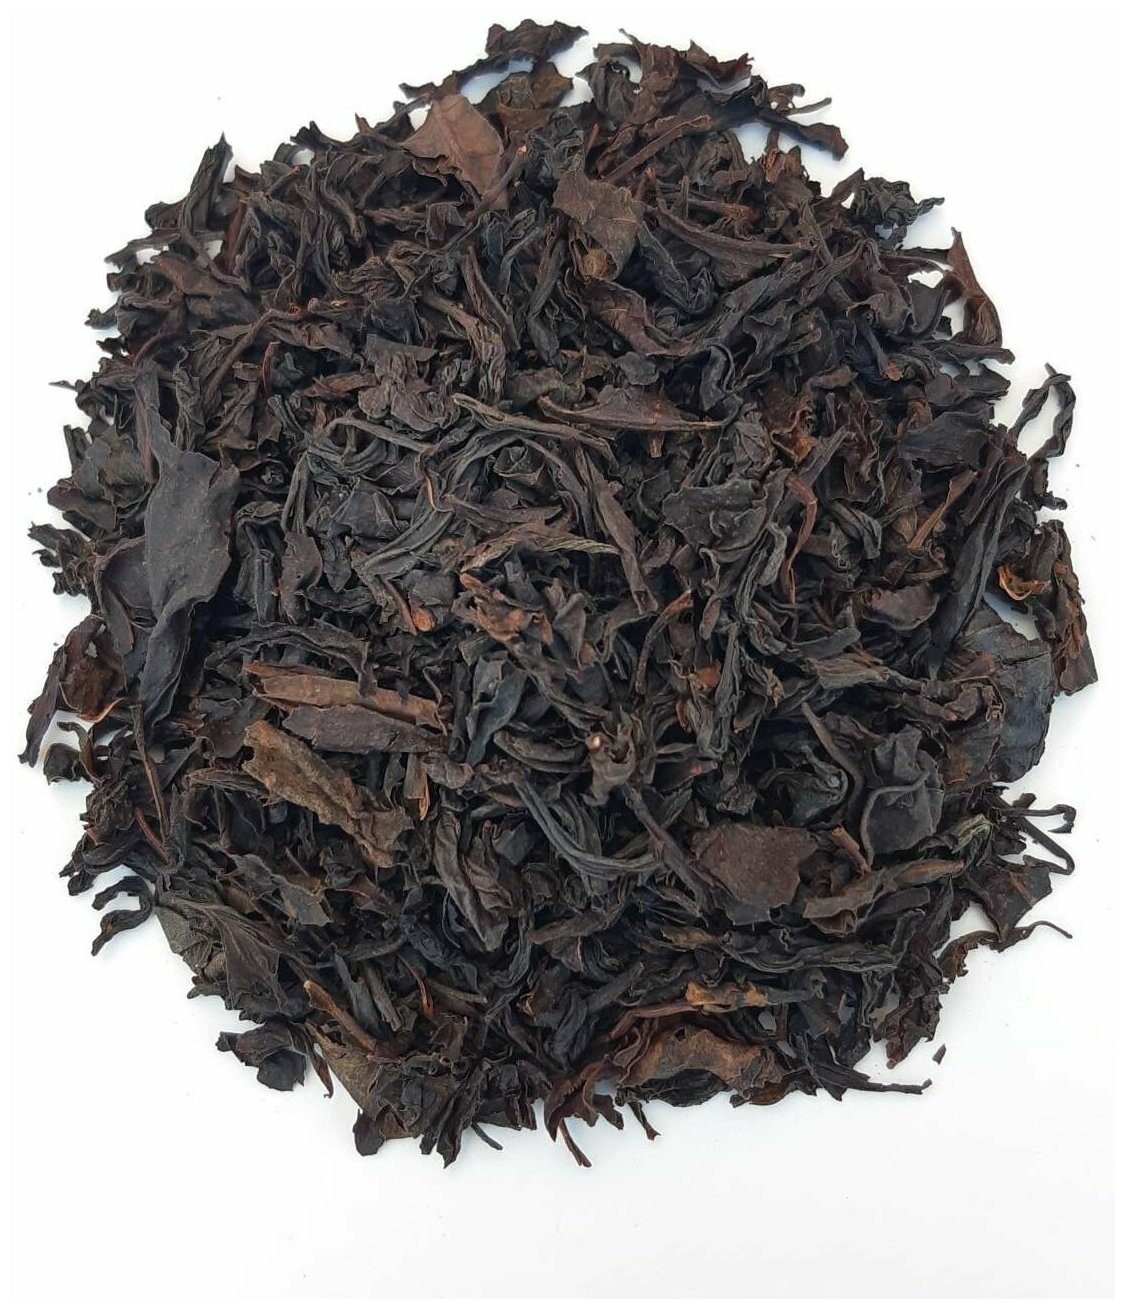 Краснодарский чай Ручной сбор Набор 300гр из 3х видов Черный байховый, Зеленый байховый, Черный с кусочками натуральных Лесных ягод